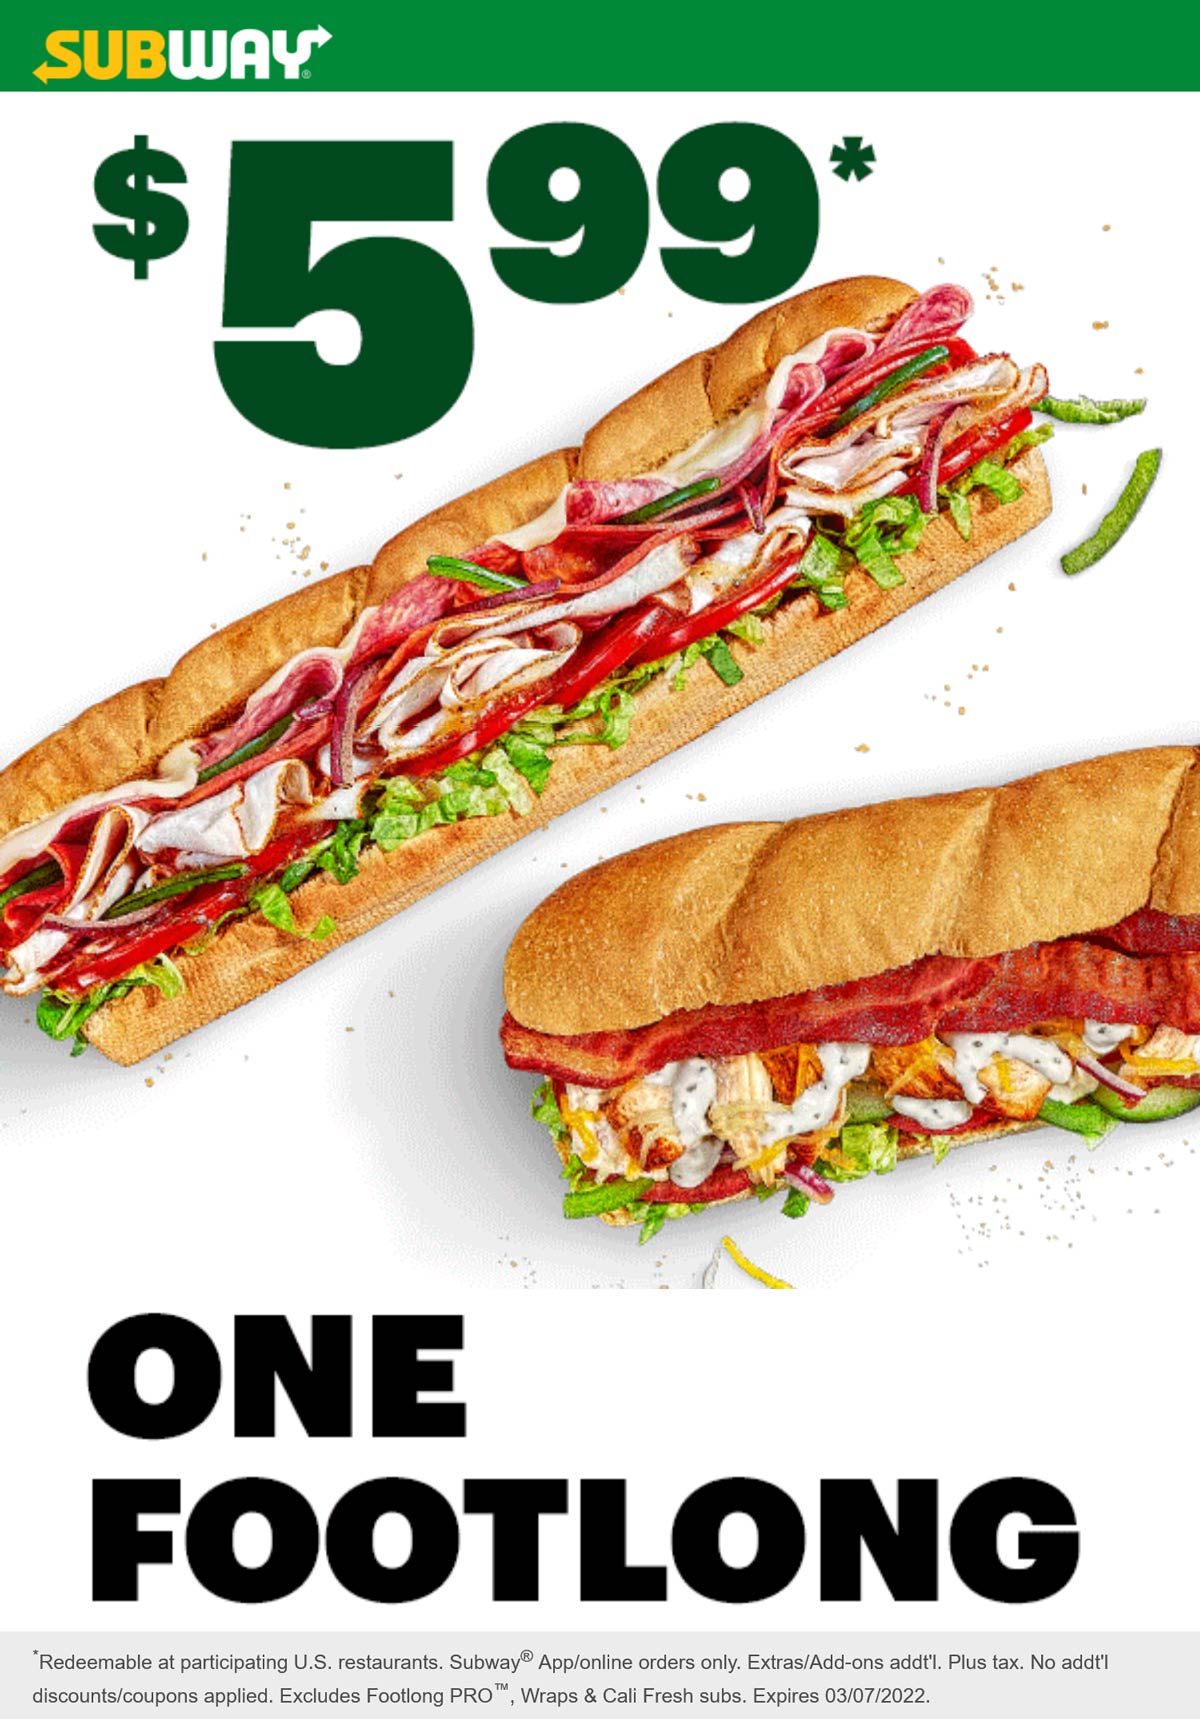 Subway restaurants Coupon  $6 footlong sandwich at Subway #subway 